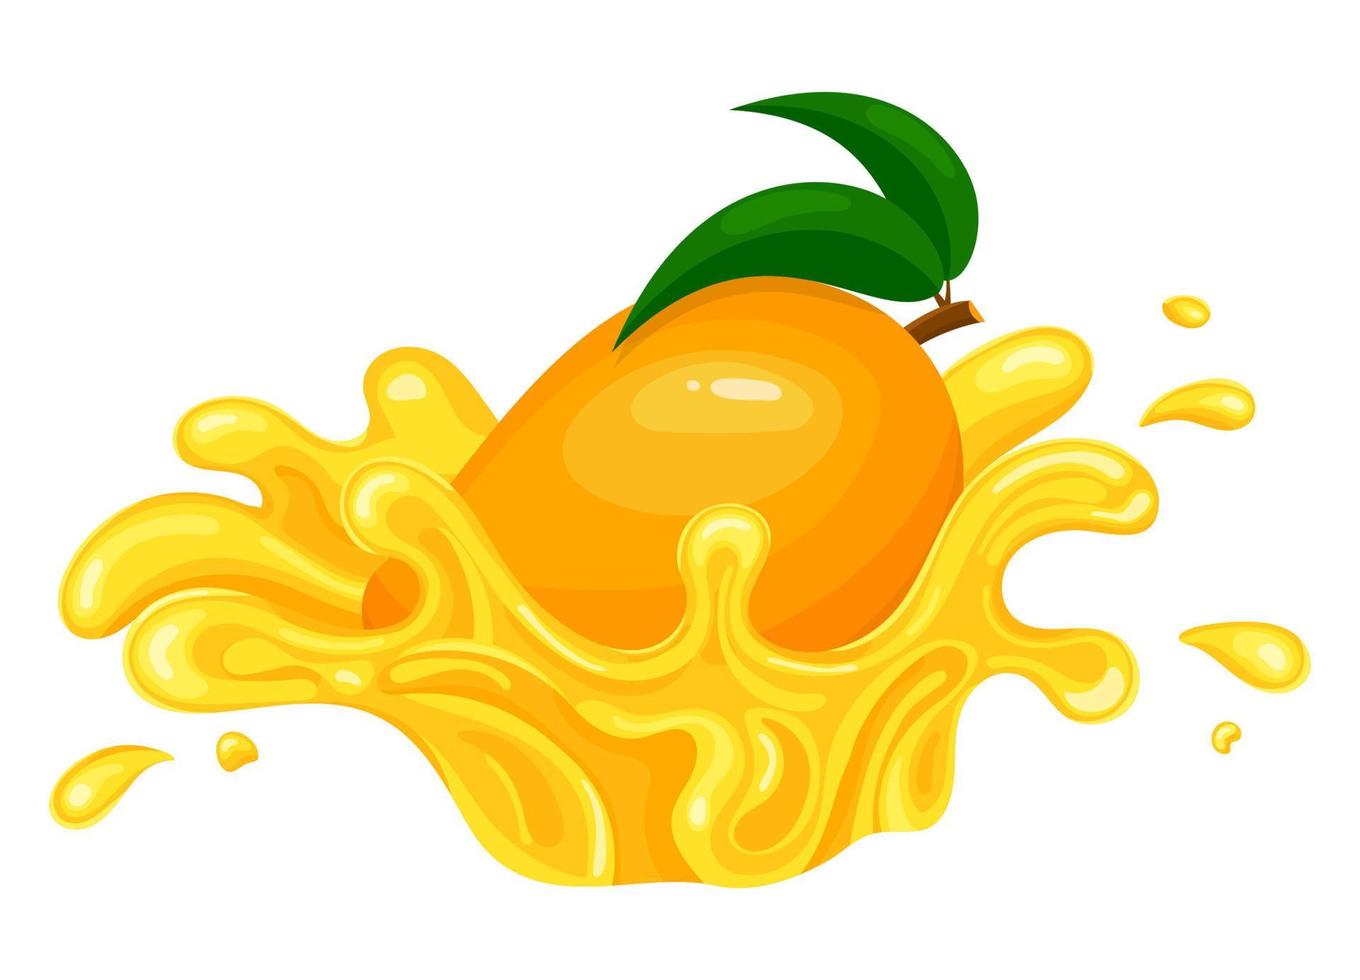 Fresh bright mango juice splash burst isolated on white background. Summer fruit juice. Cartoon style. Vector illustration for any design.